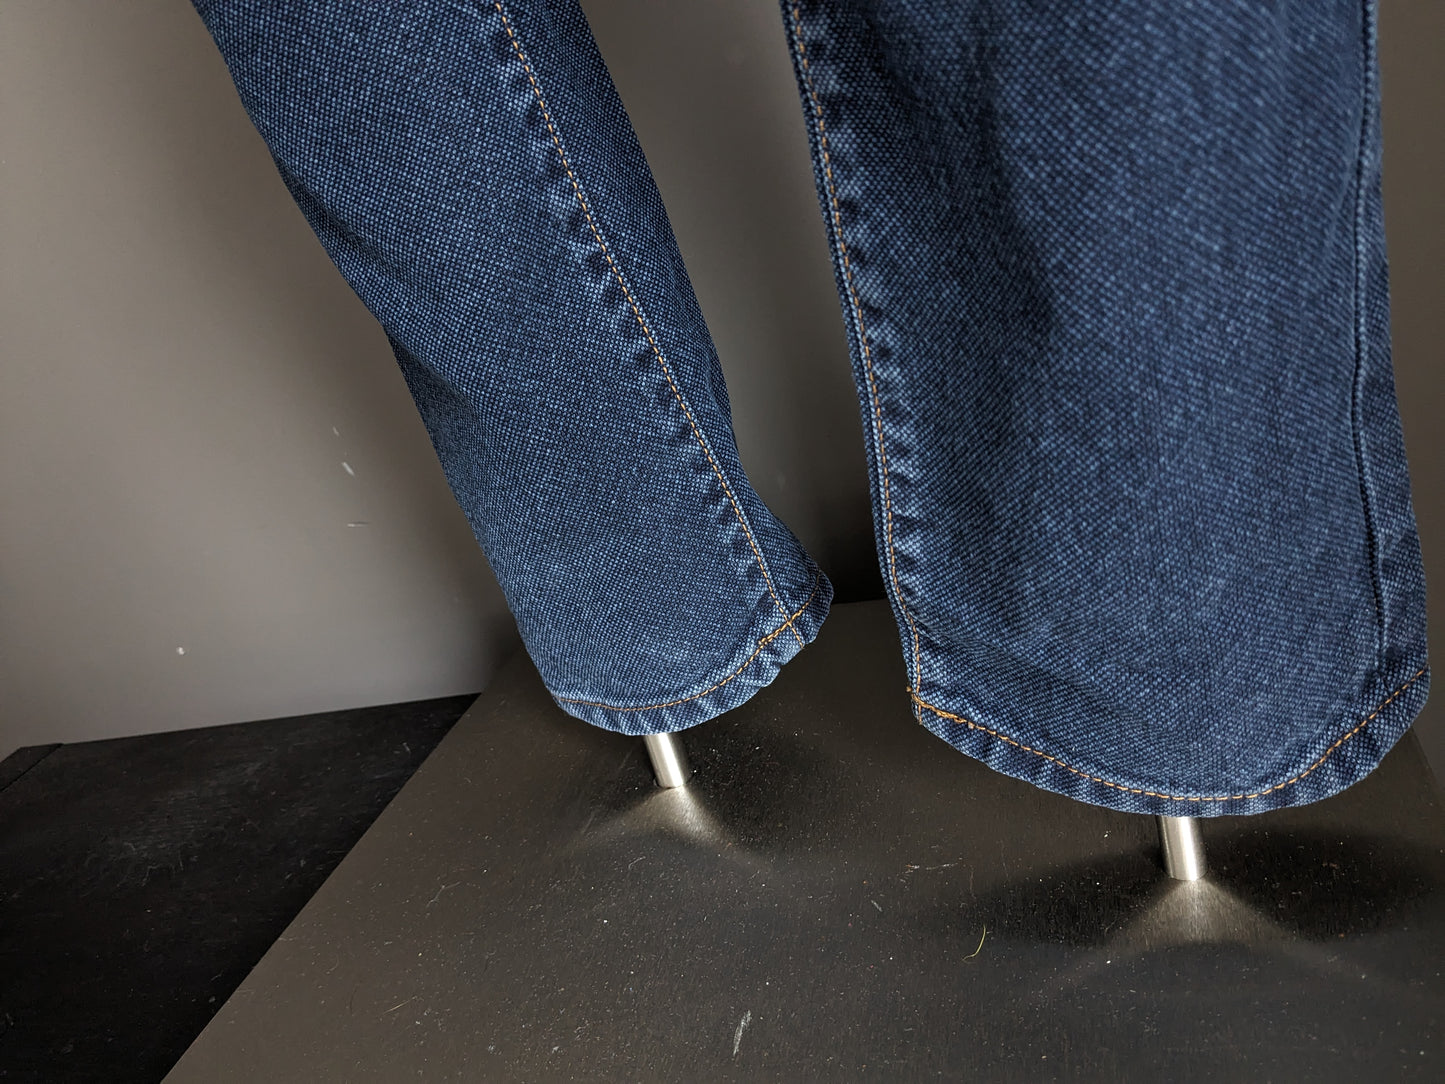 PT05 Jeans. Blue mixed. Size W30 - L36.